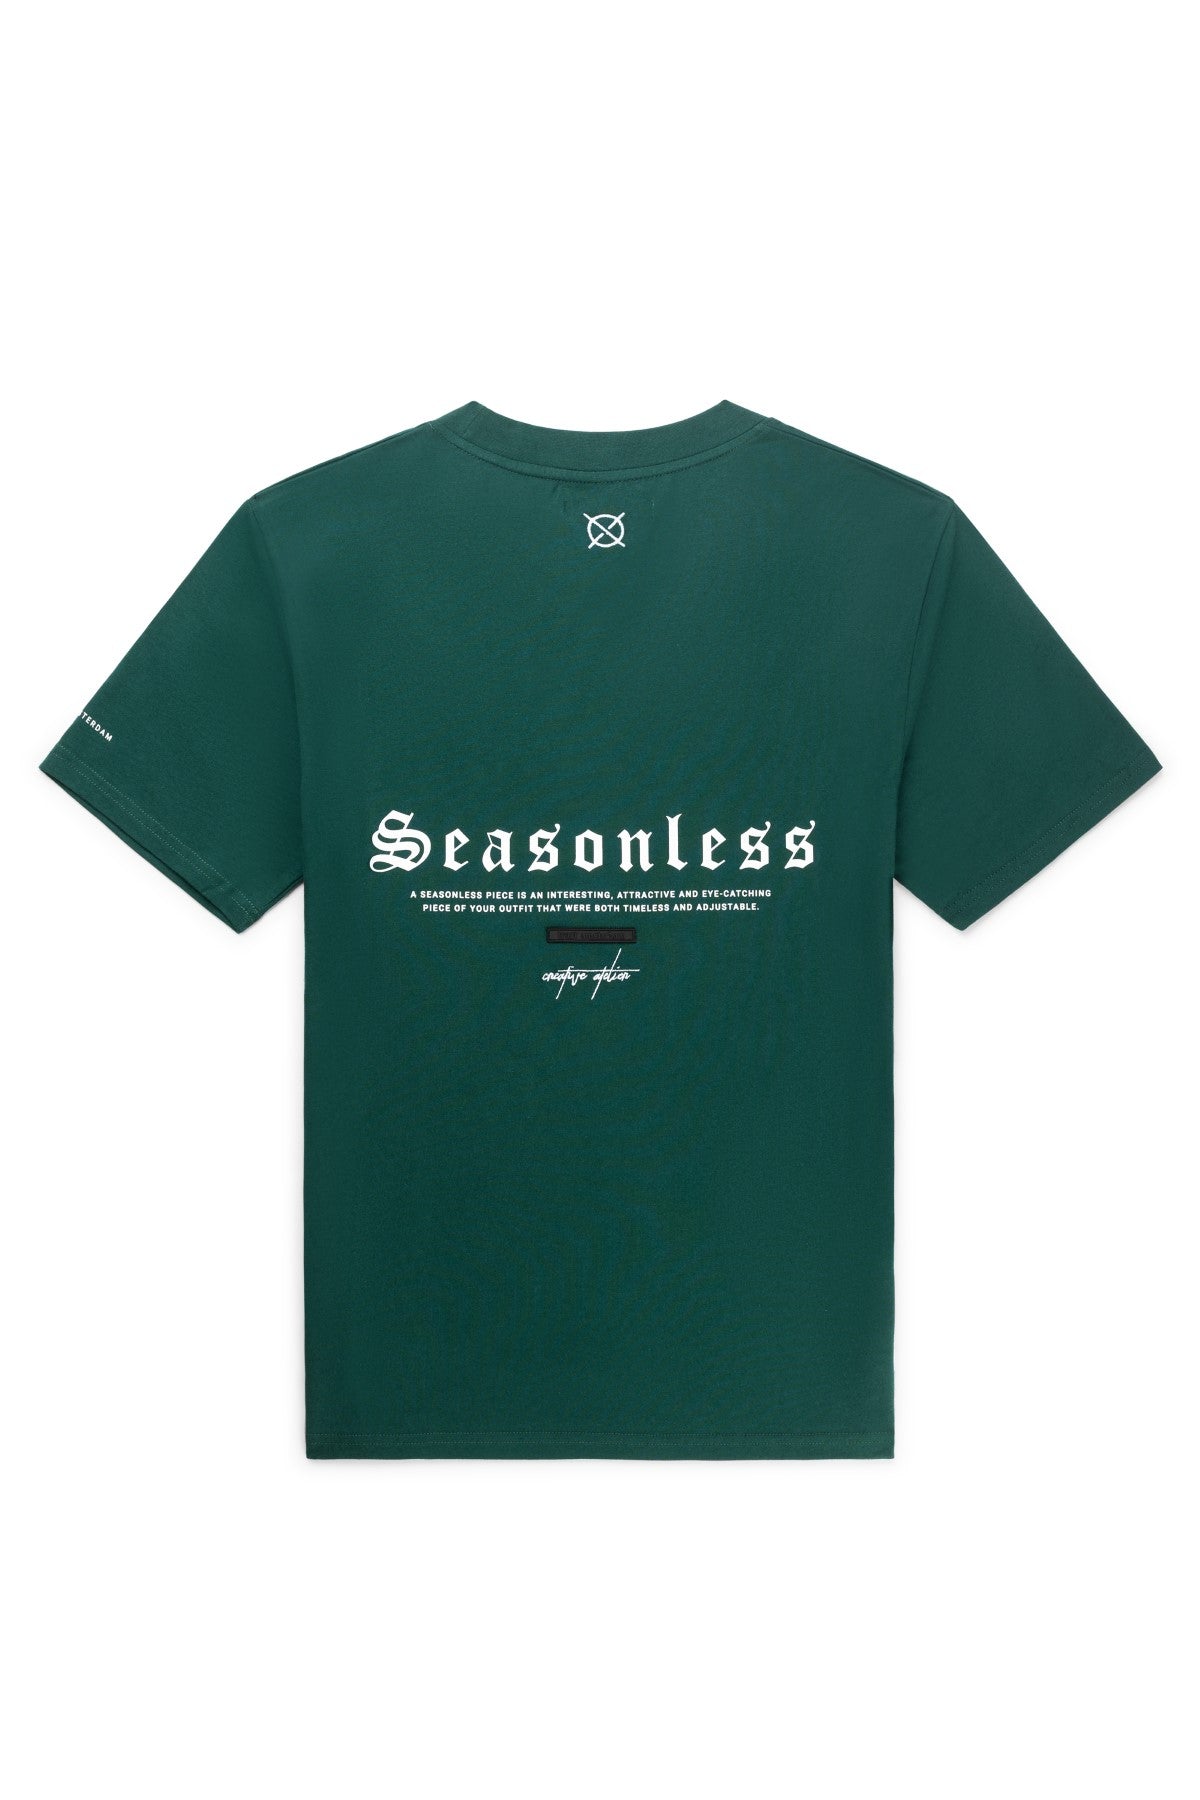 Seasonless T-Shirt - Eden